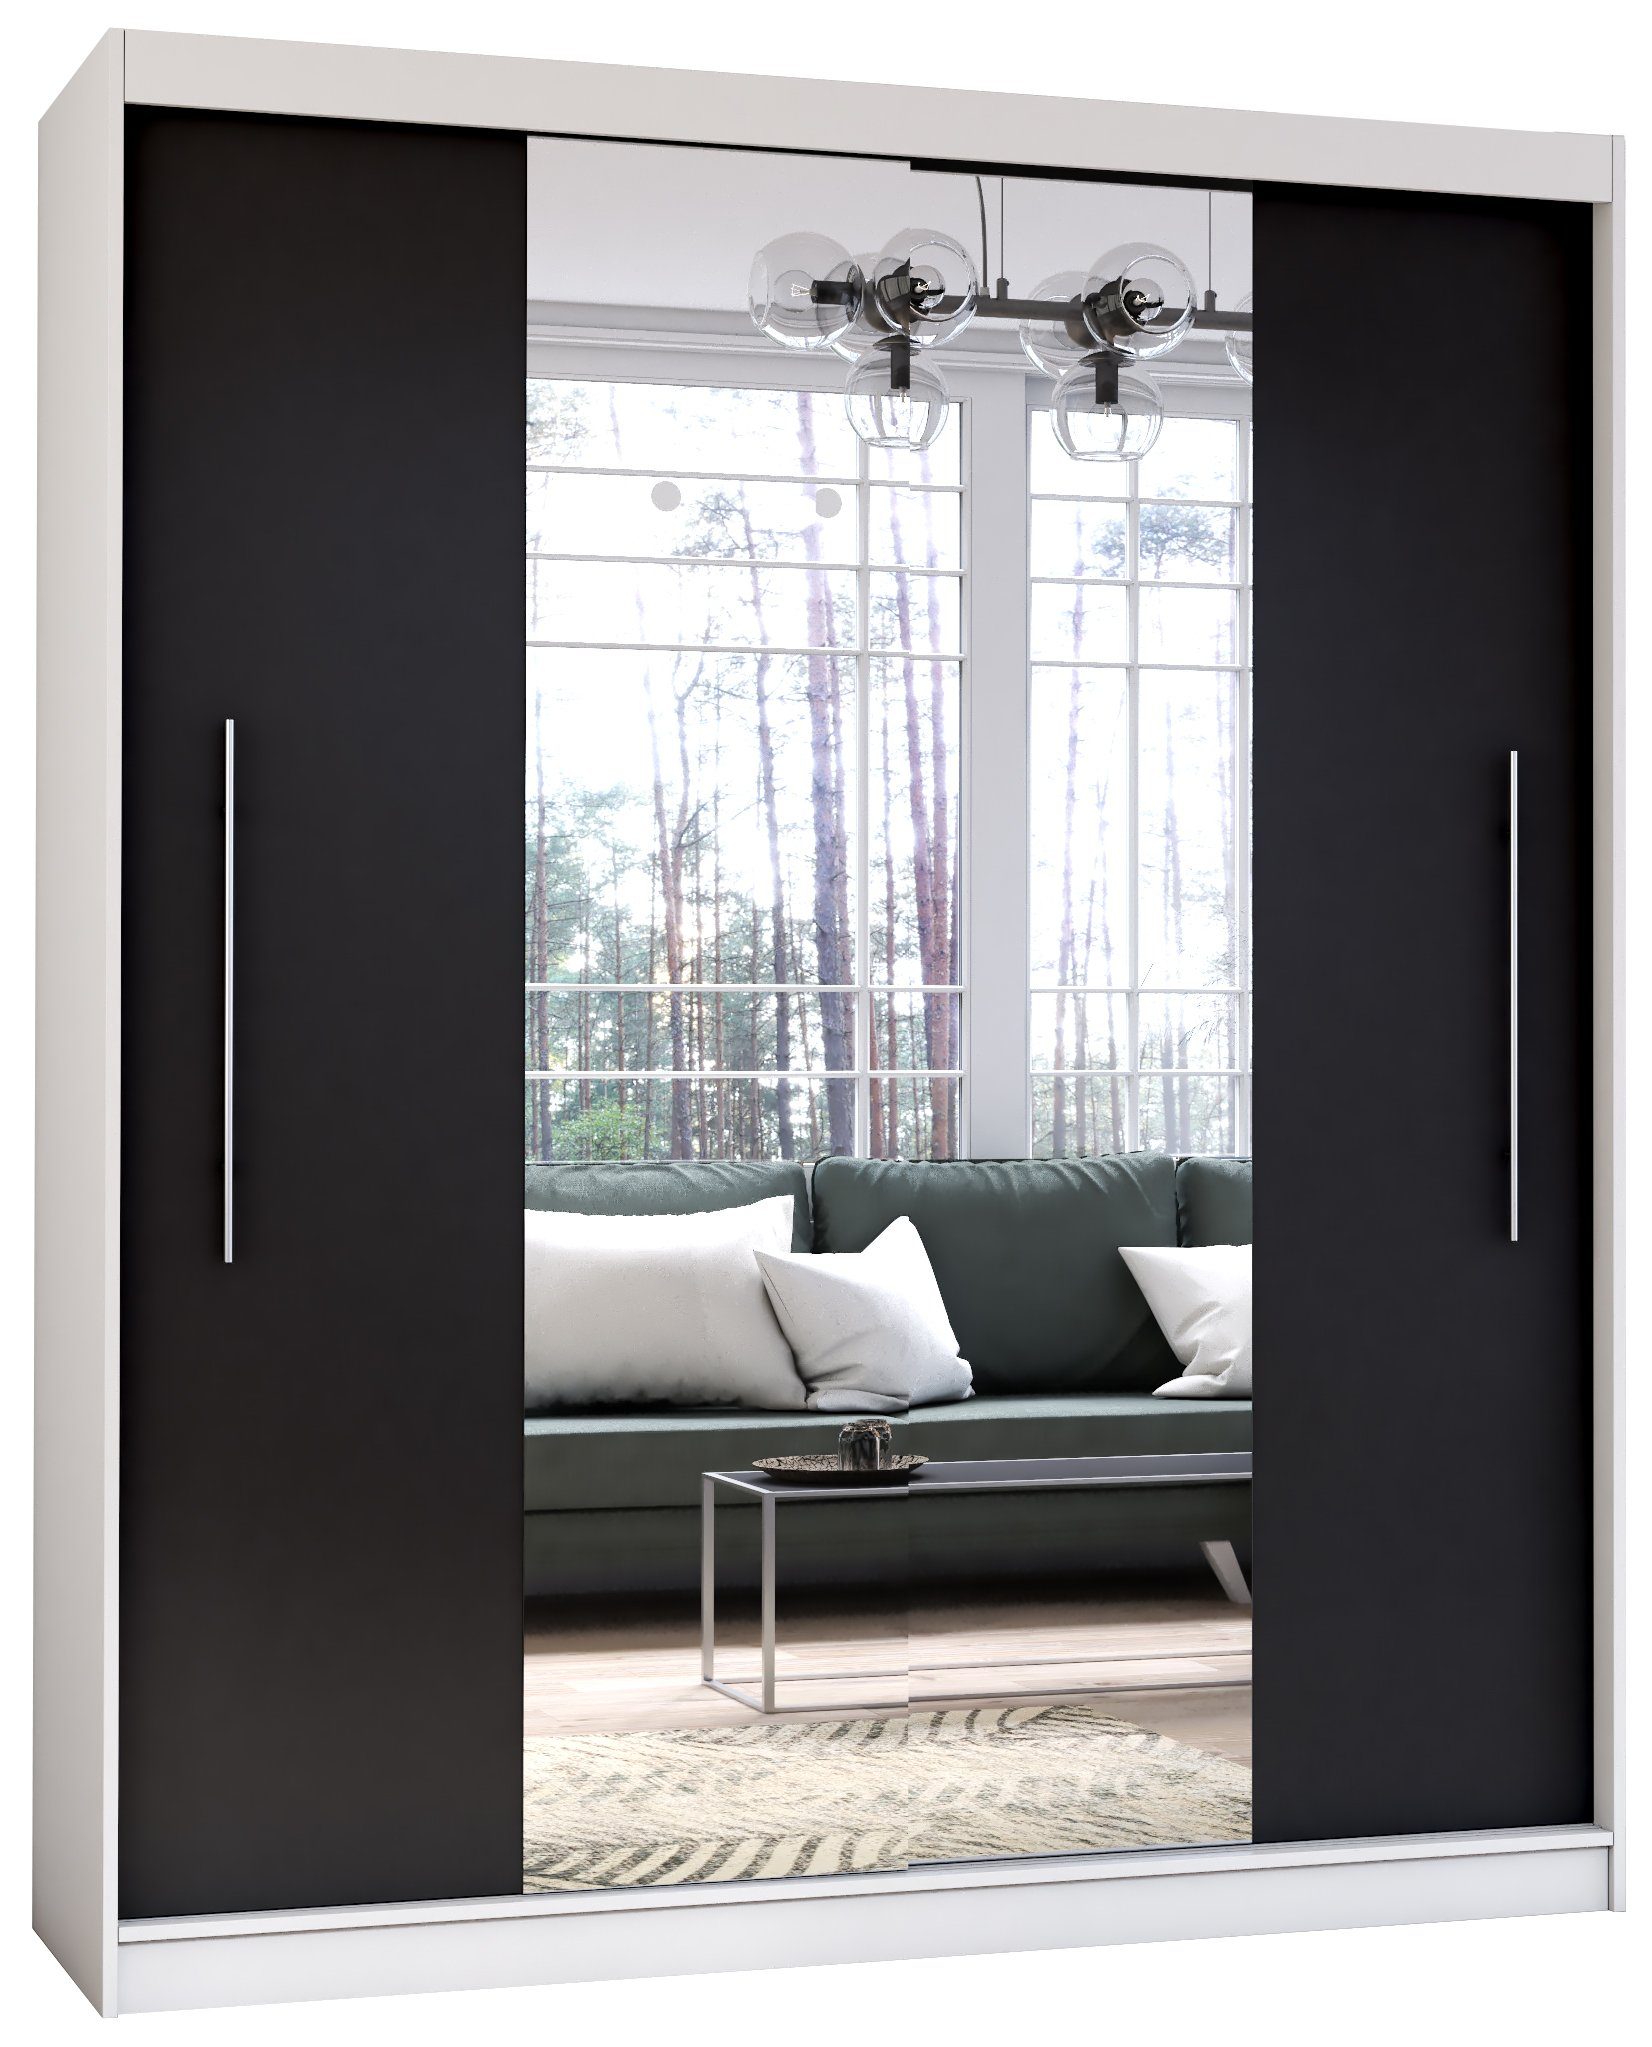 Polini Home Schwebetürenschrank Prime Comfort 204x218x58 cm Spiegel mittig  in Eiche-Weiß | Schwebetürenschränke